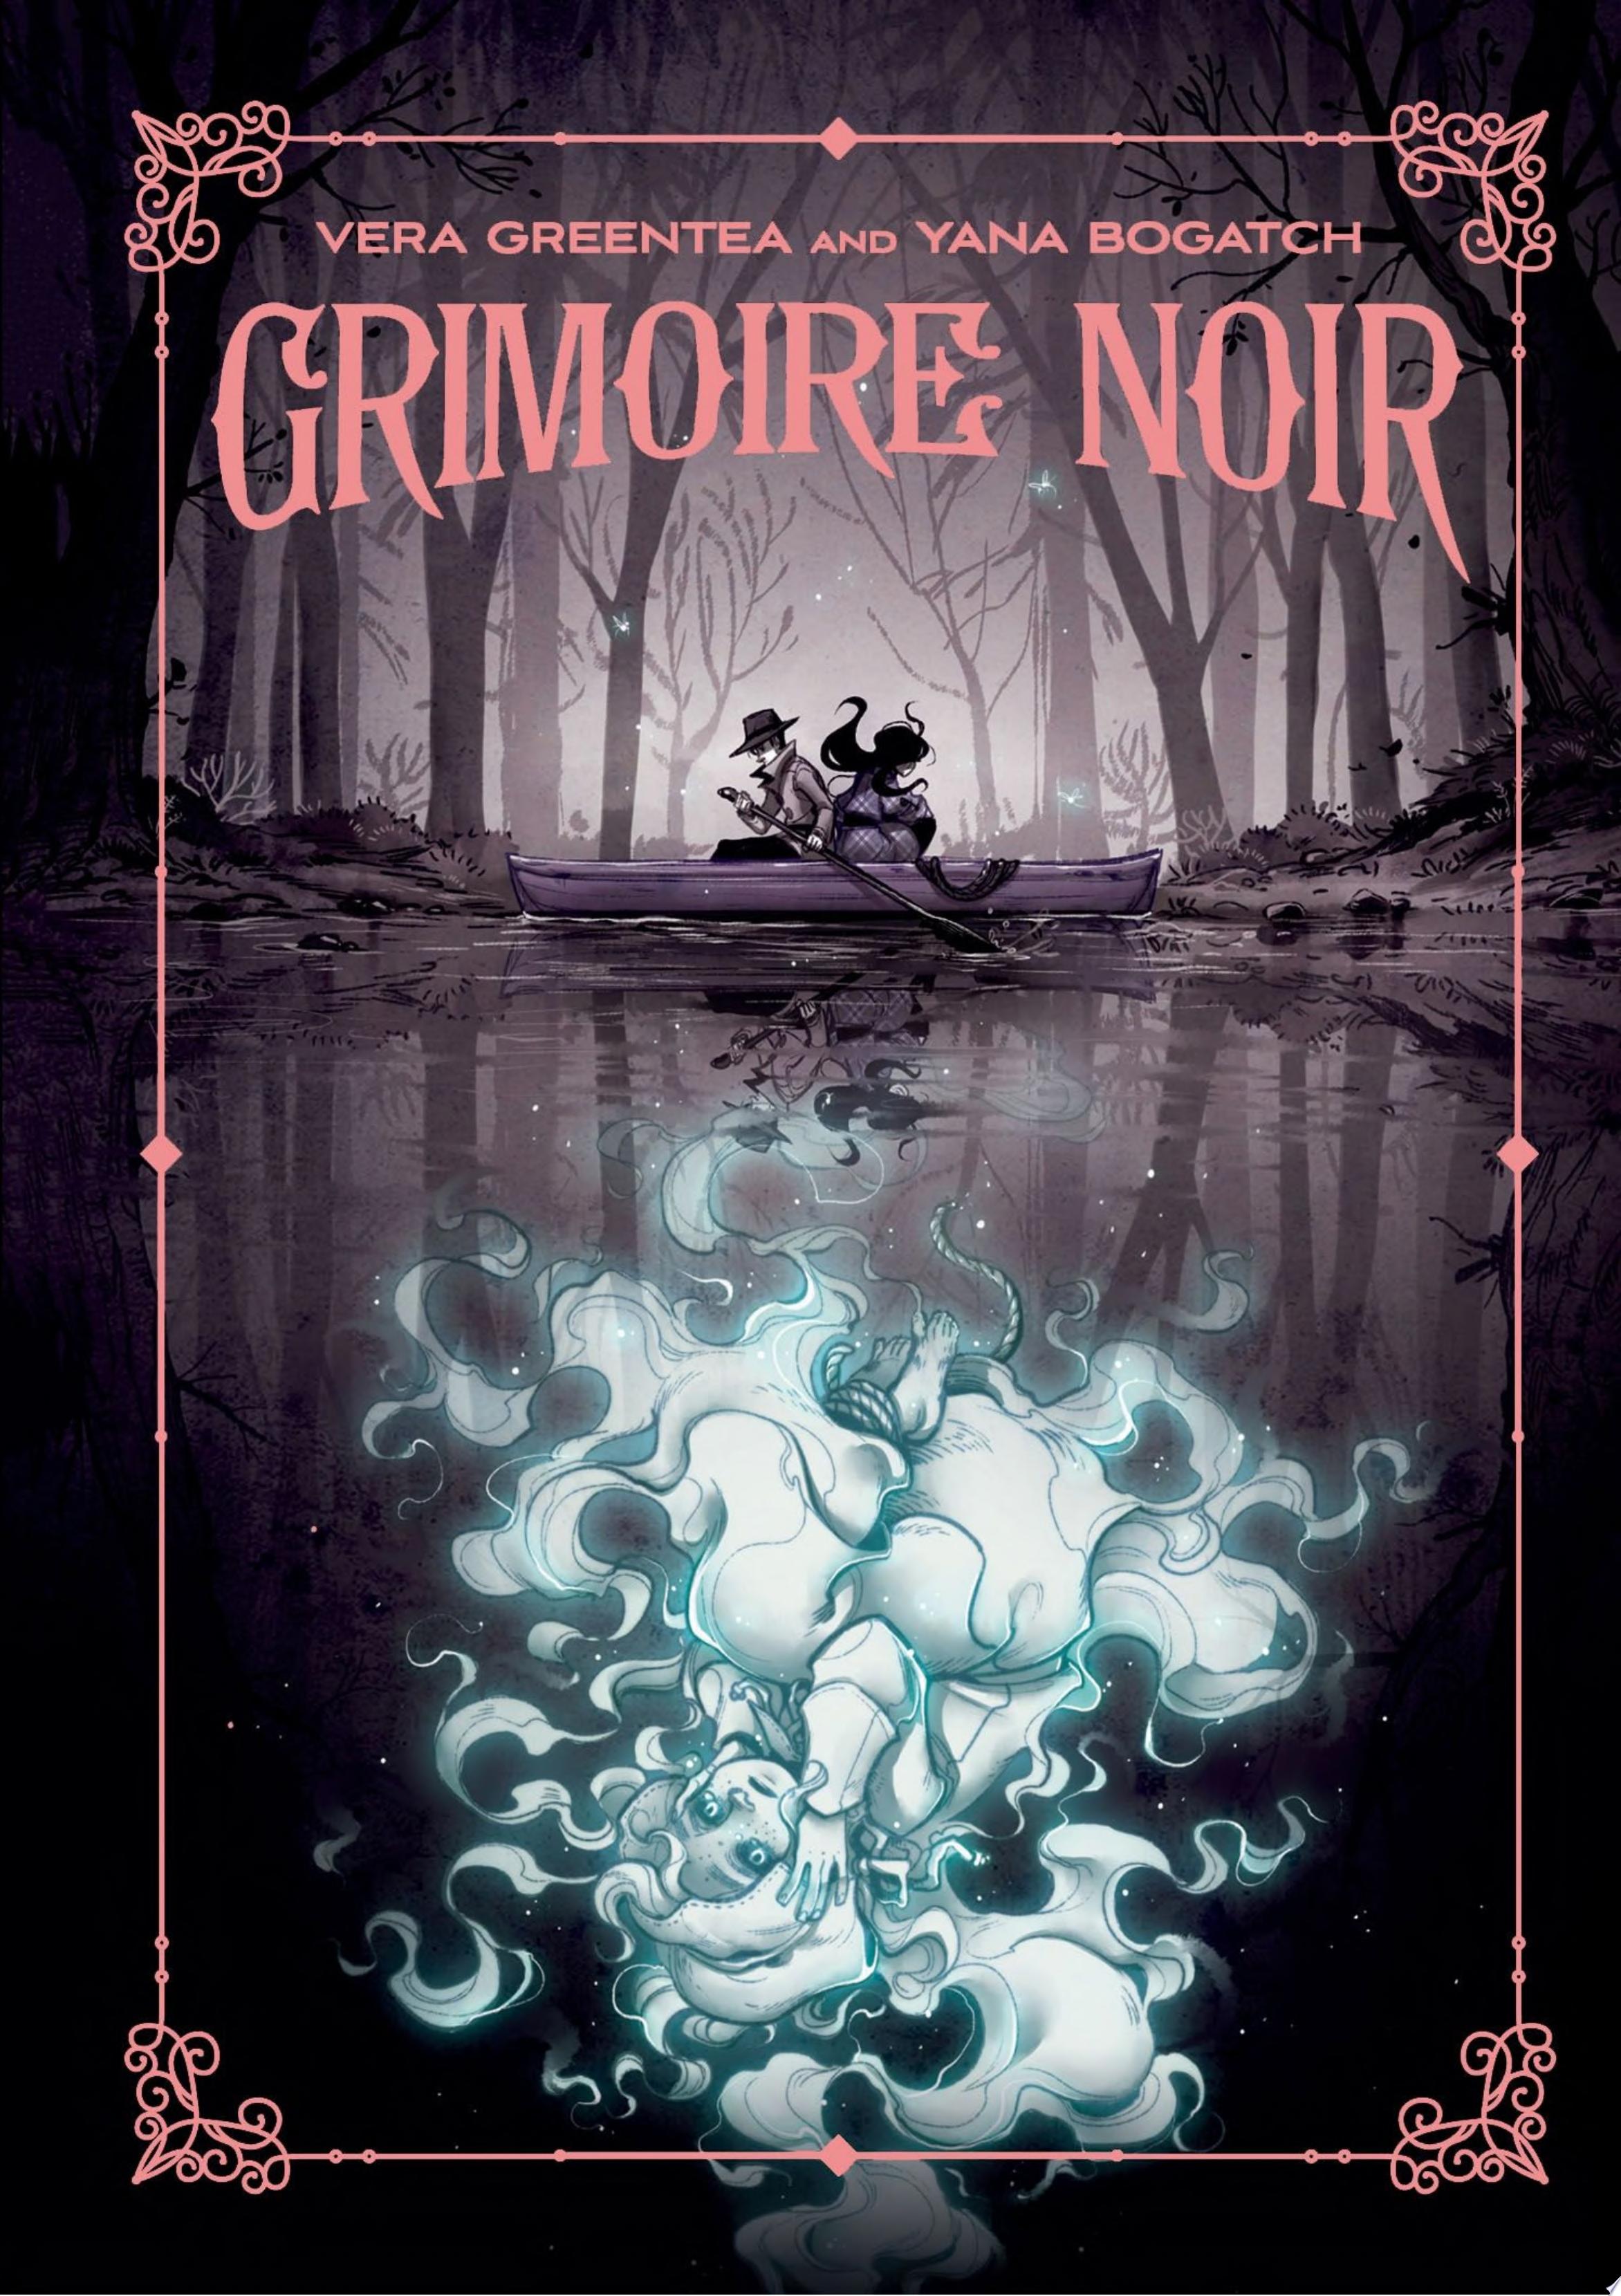 Image for "Grimoire Noir"